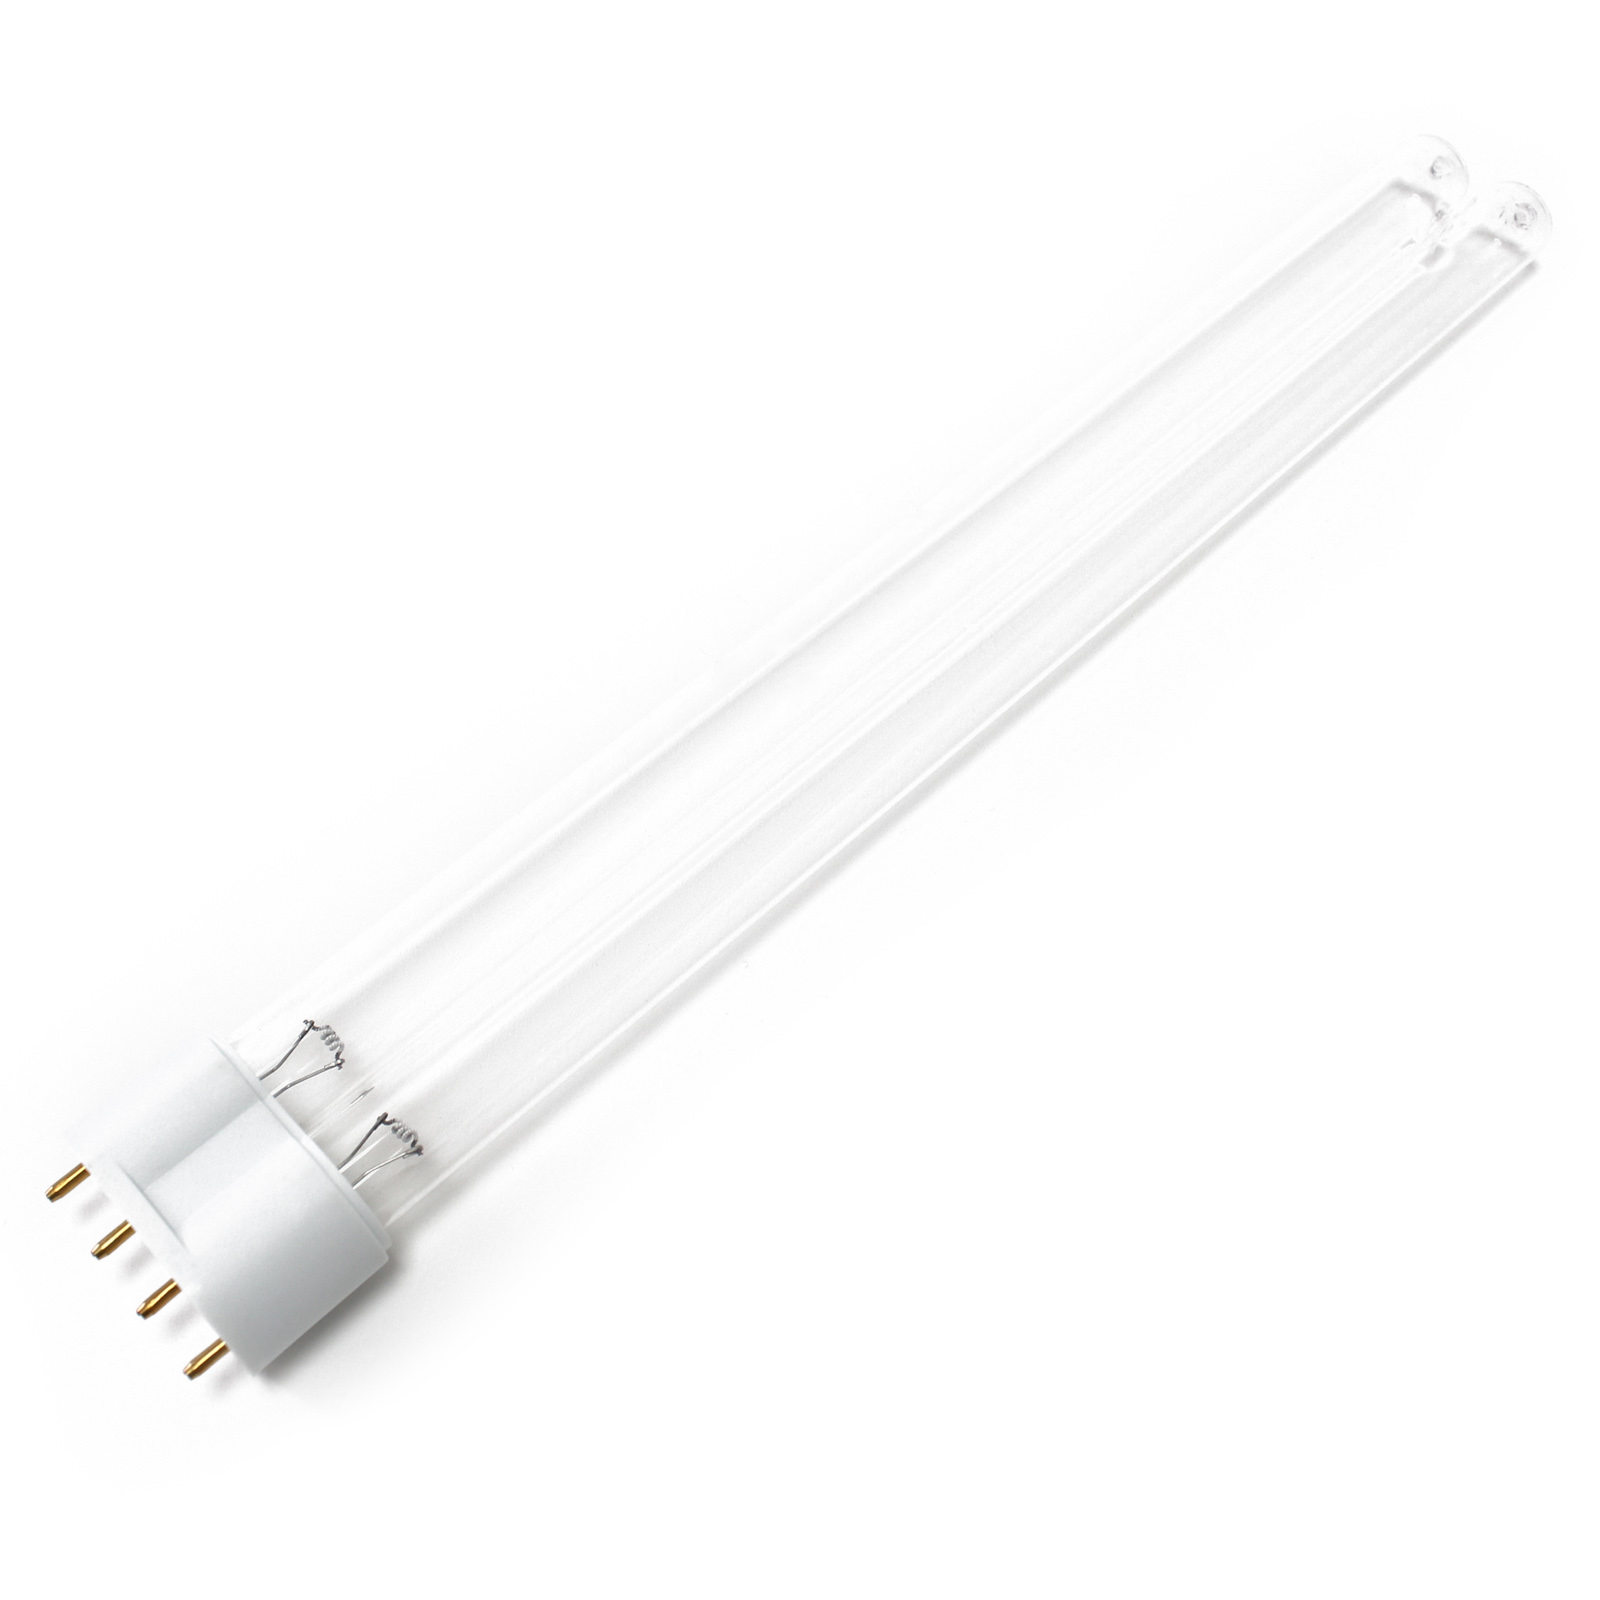 CUV-318 UV-C Lampe Röhre 18W Teich-Klärer UVC Leuchtmittel